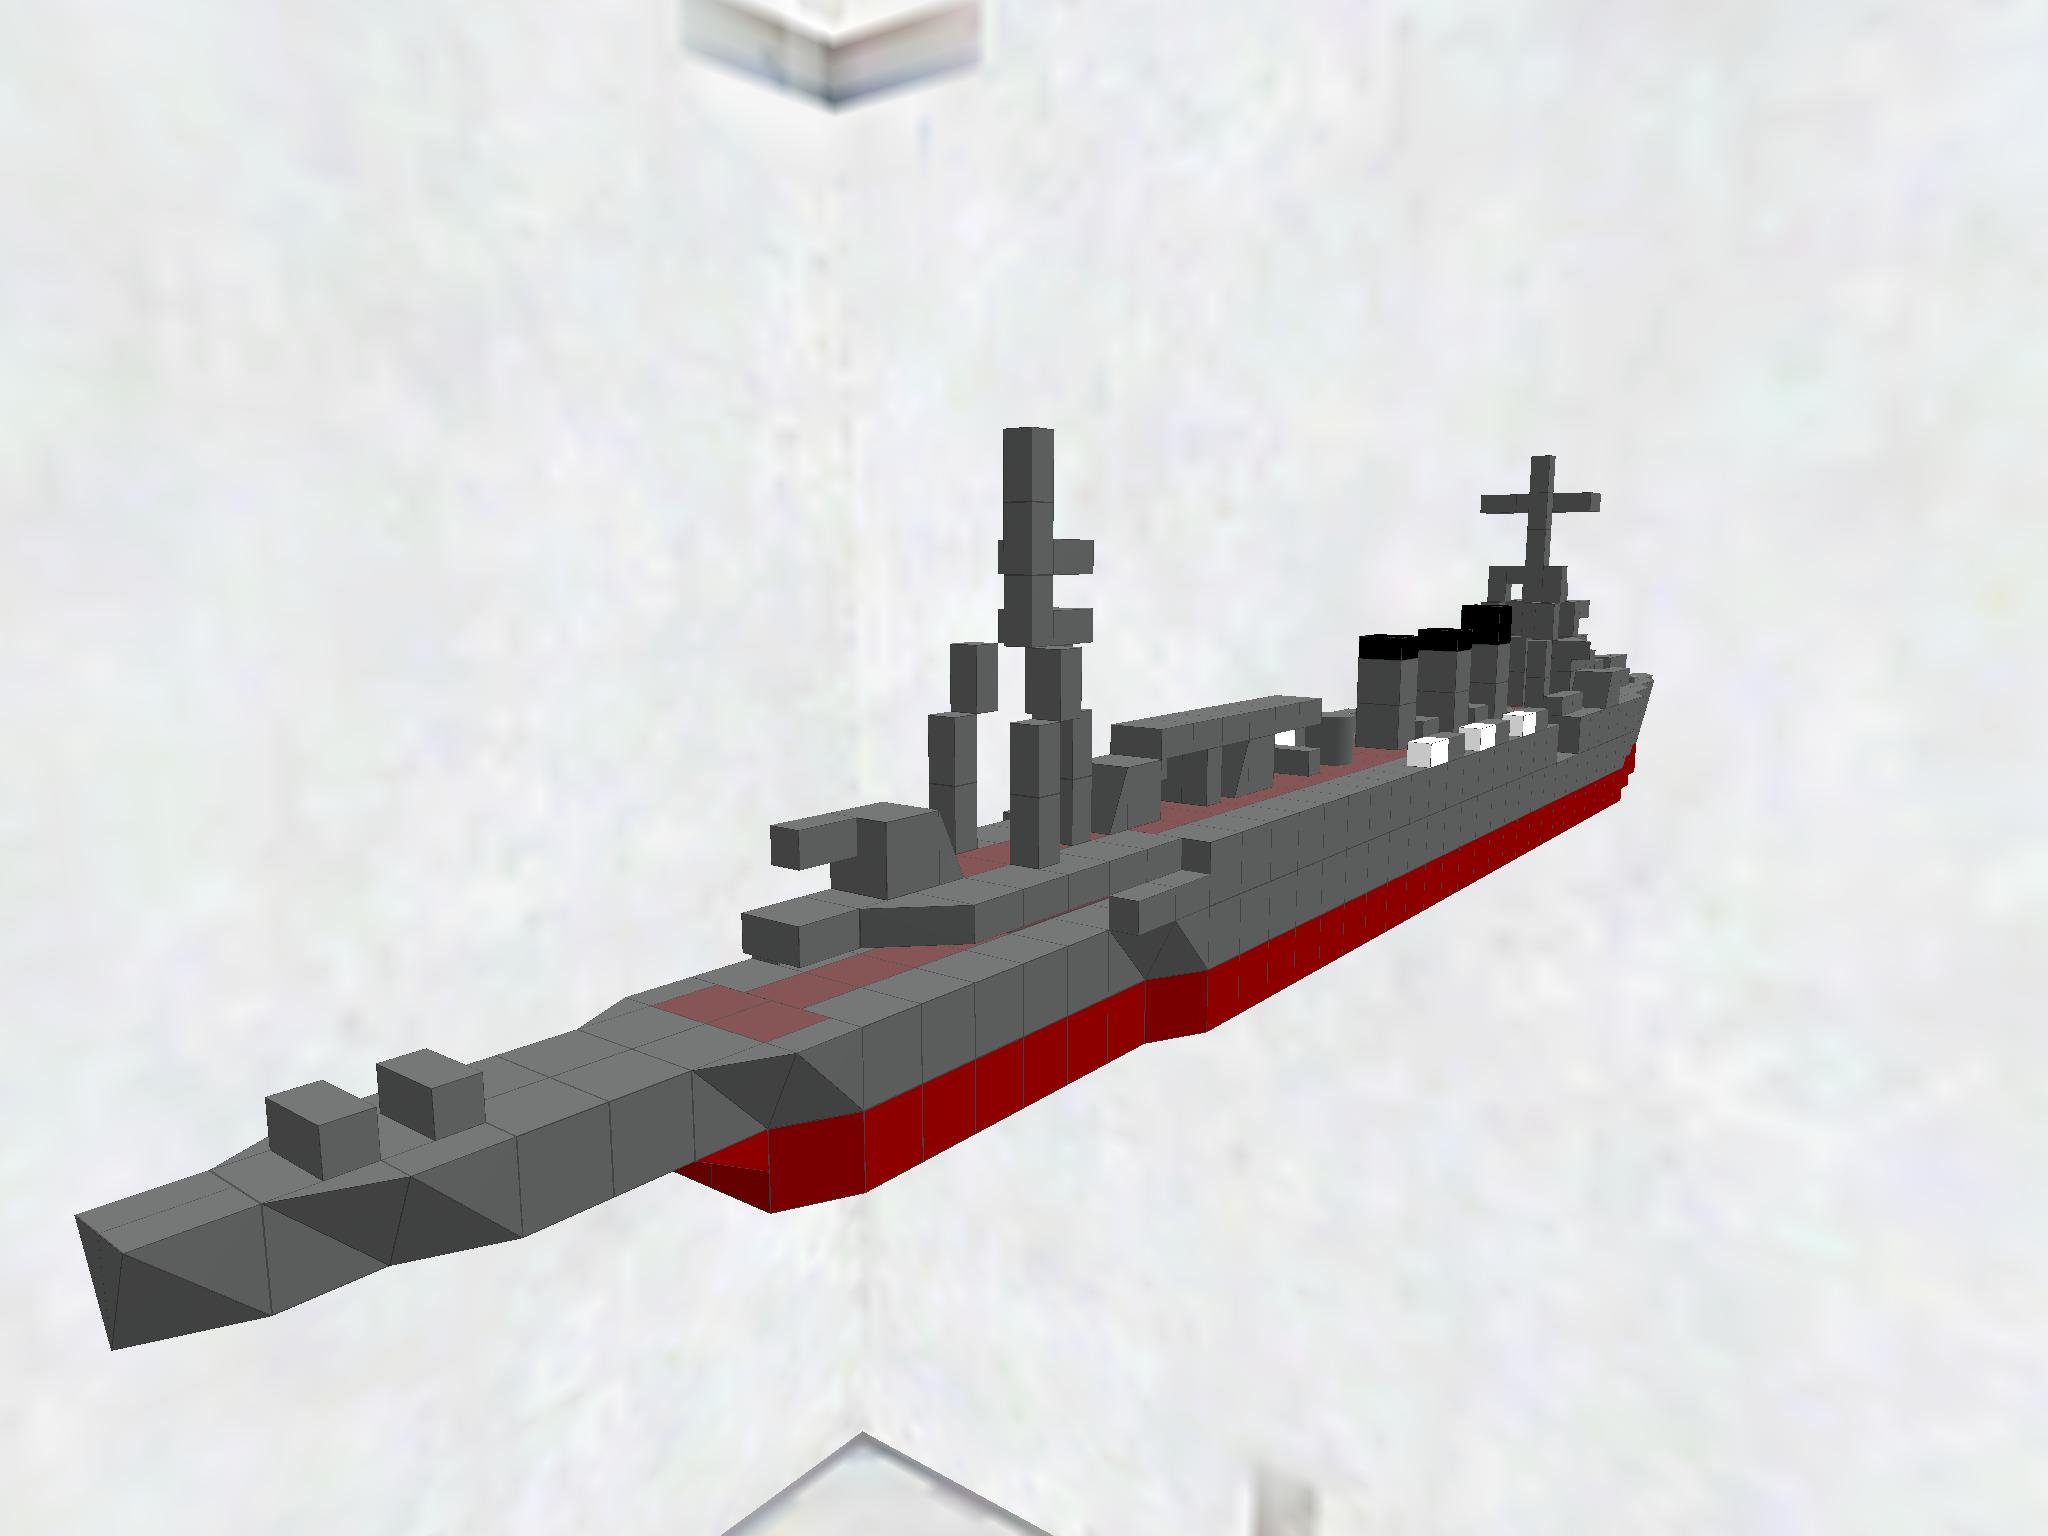 Light cruiser Natori